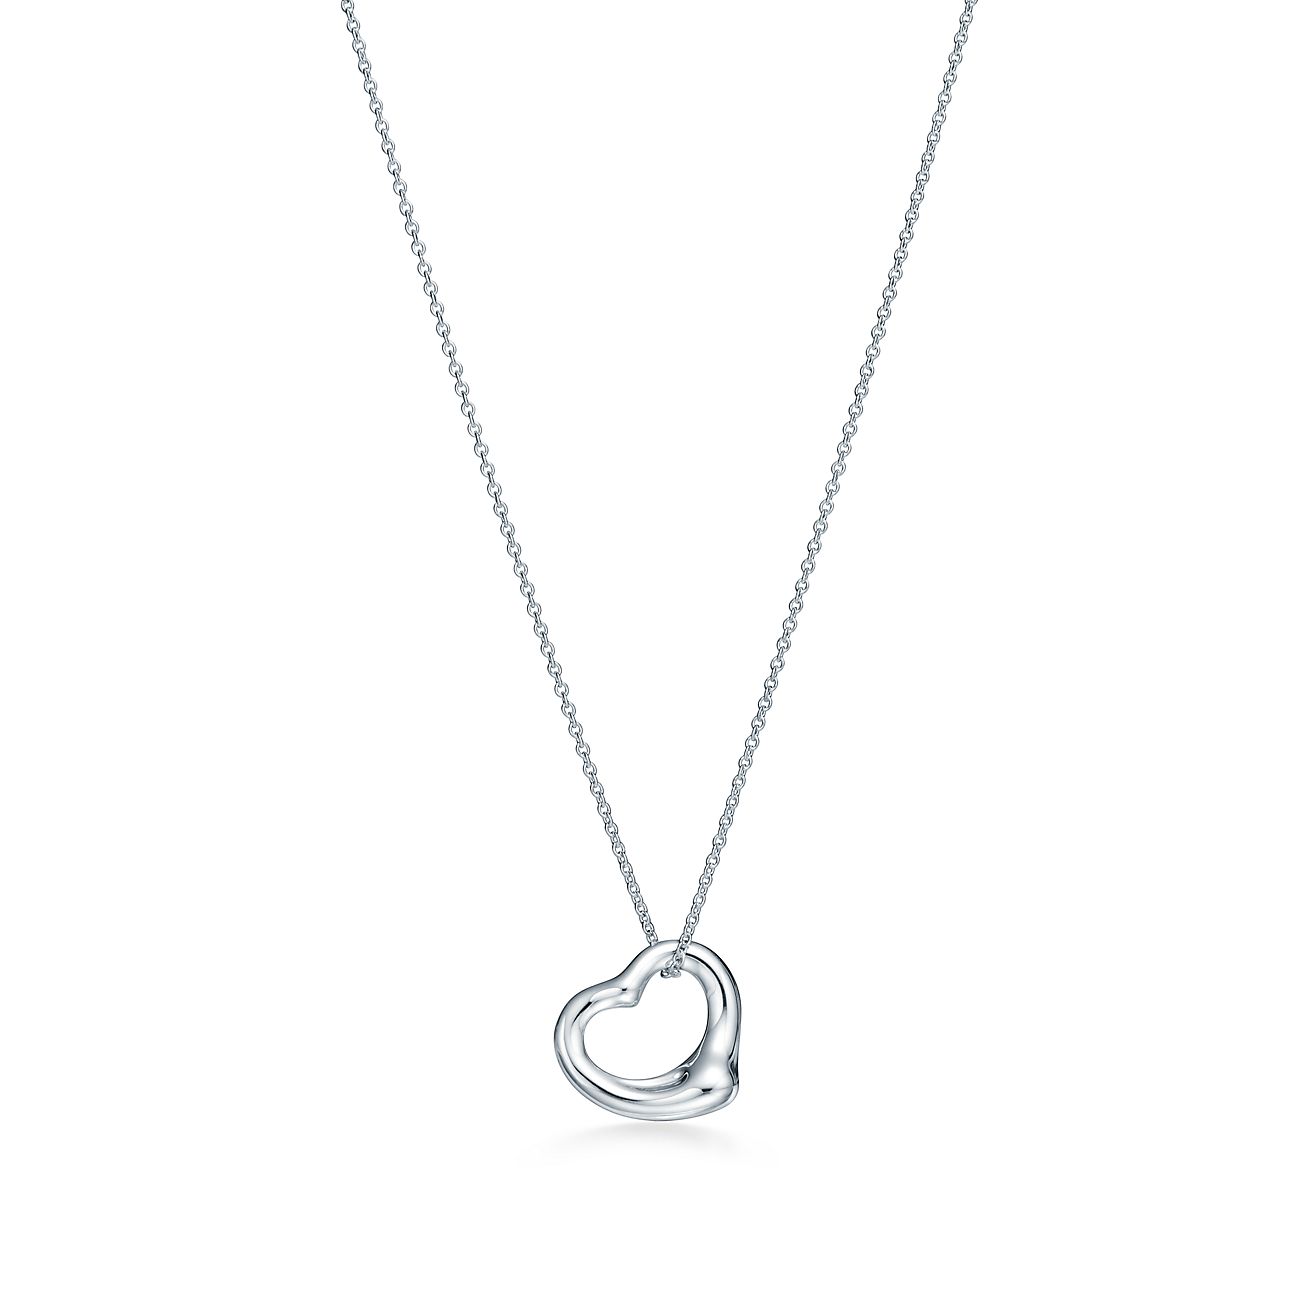 Engraved Heart Necklace – Tom Design Shop